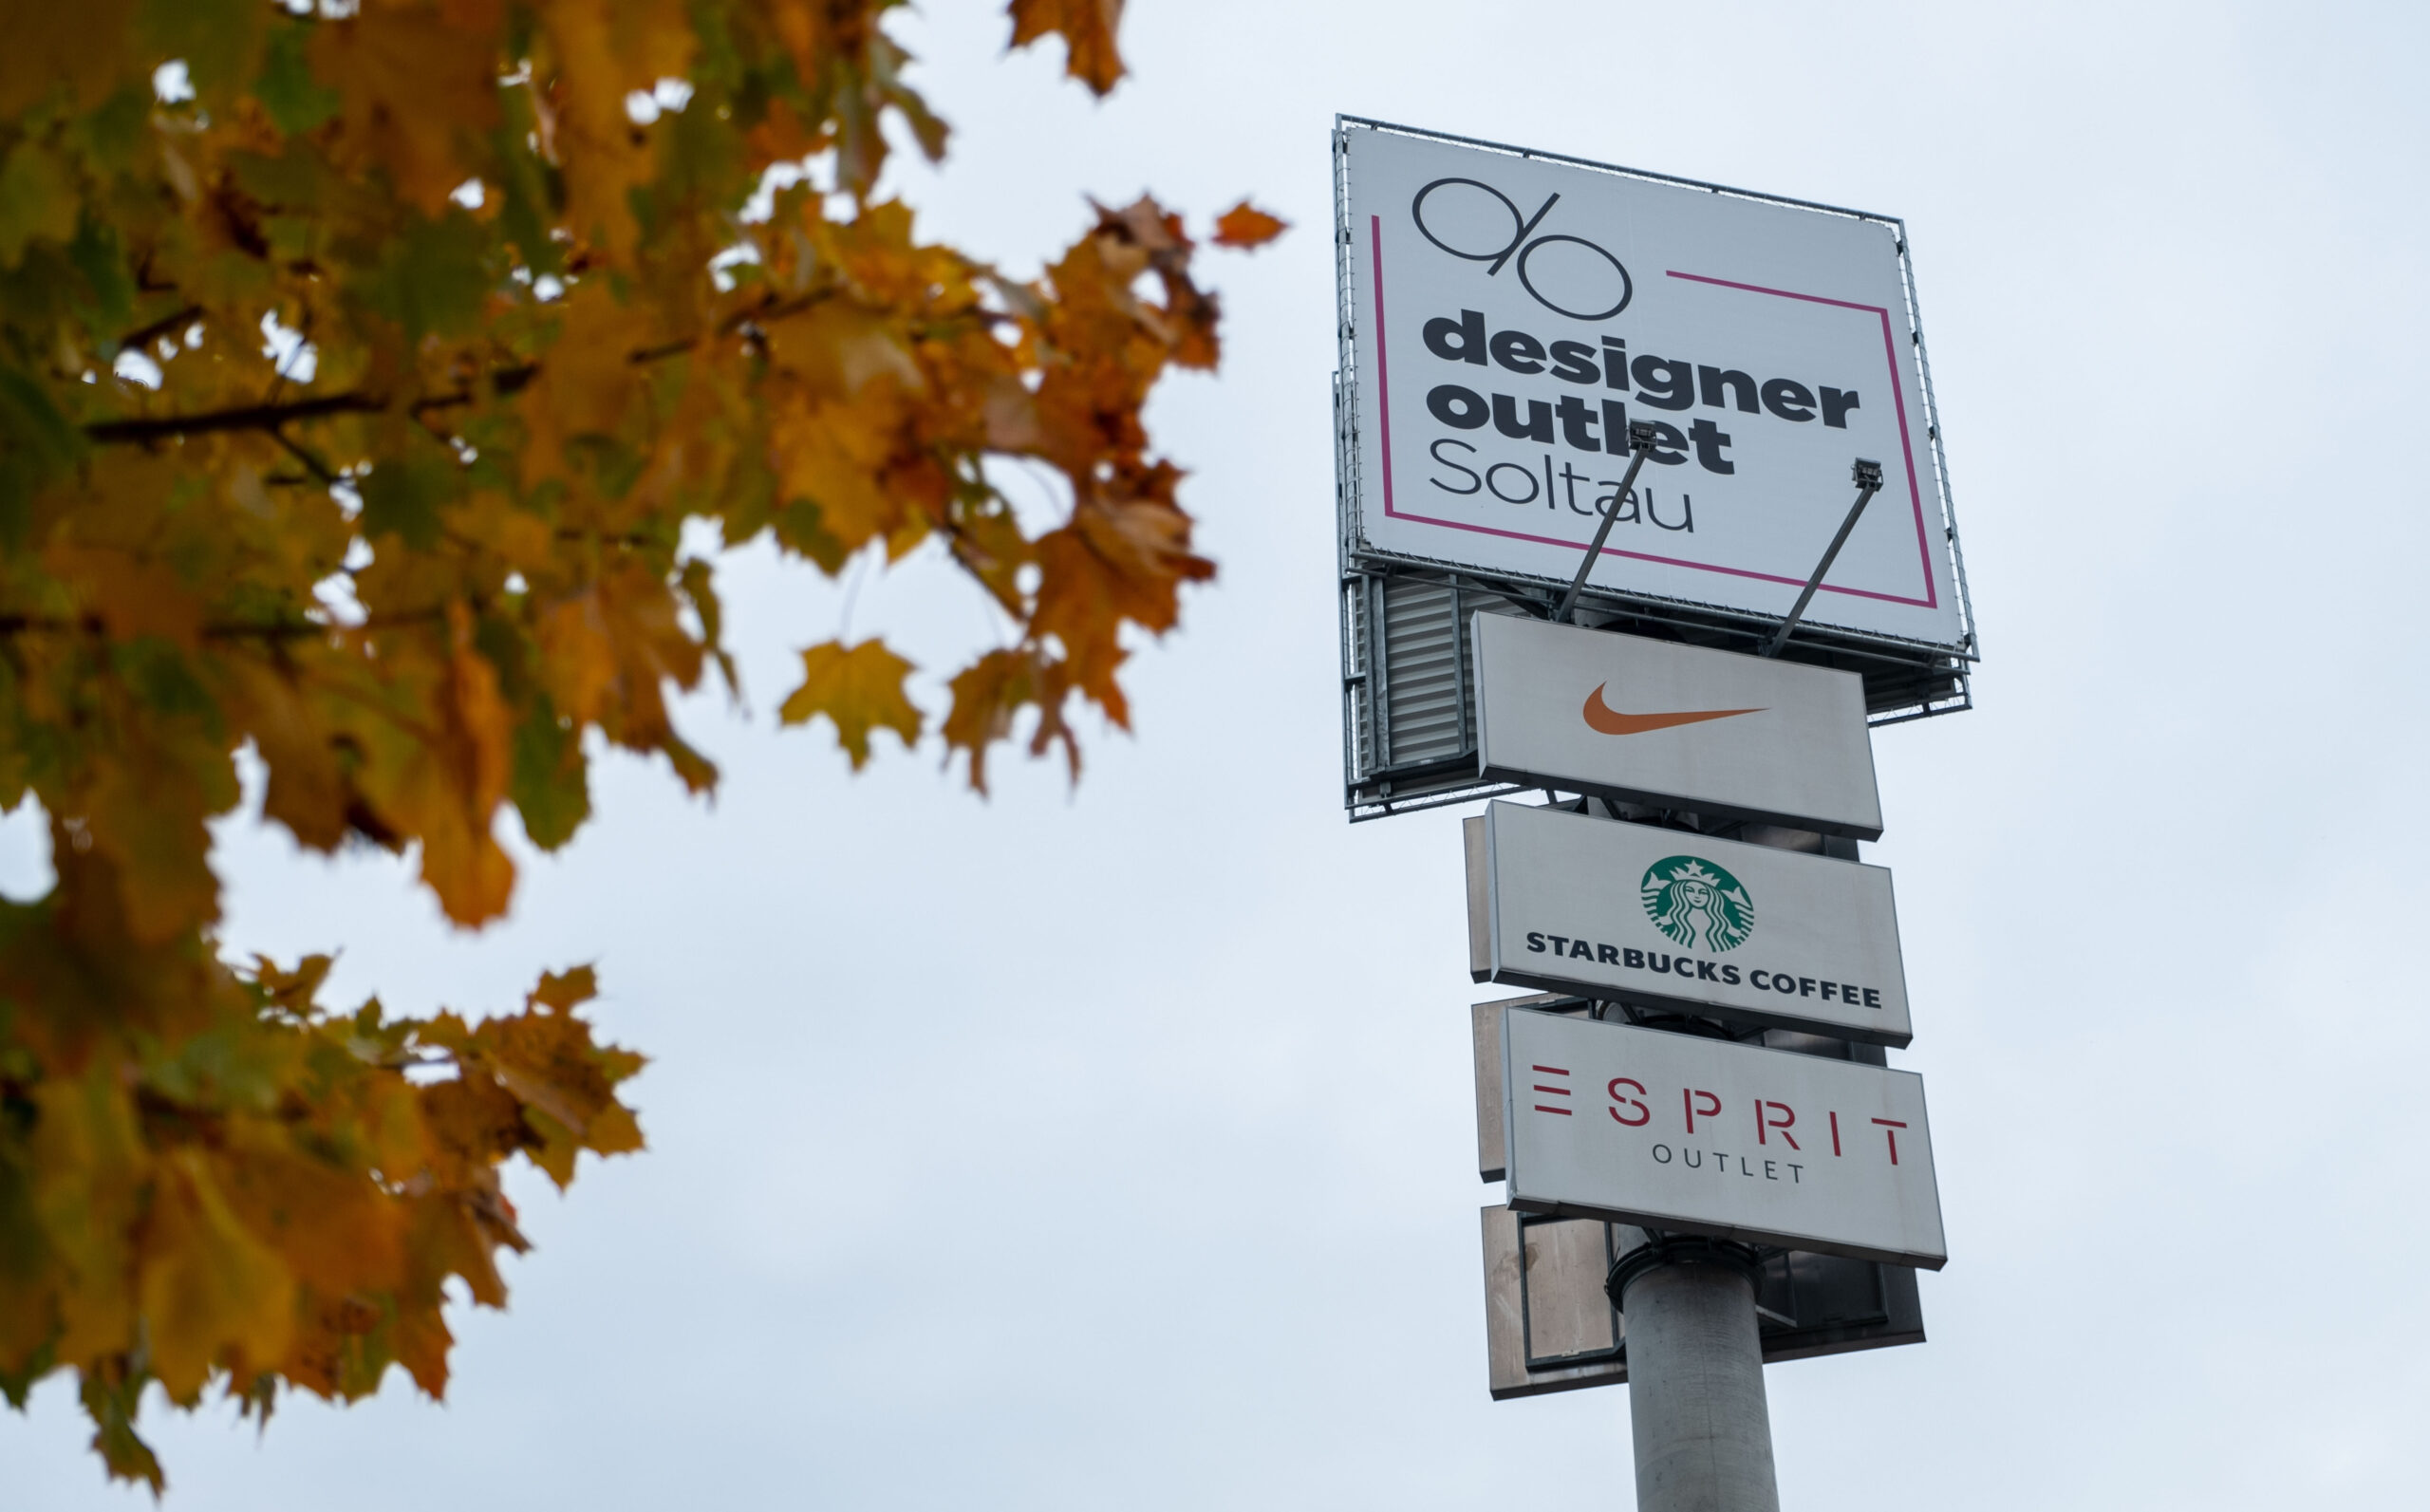 Ein Schild des Designer Outlets. Nike, Starbucks und Esprit-Schilder sind zudem zu sehen.